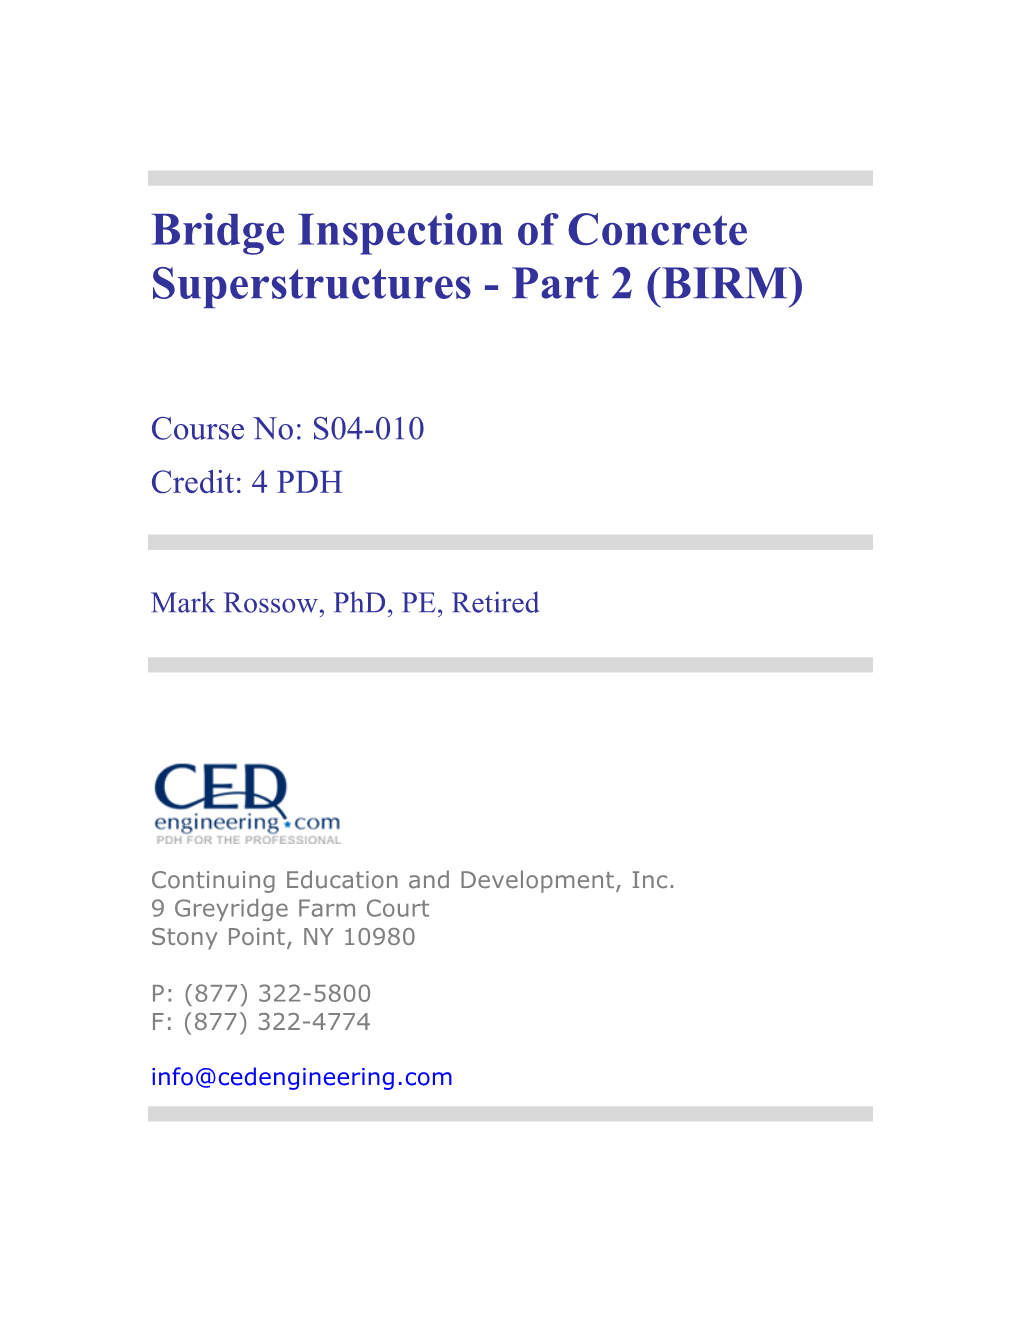 Bridge Inspection of Concrete Superstructures - Part 2 (BIRM)